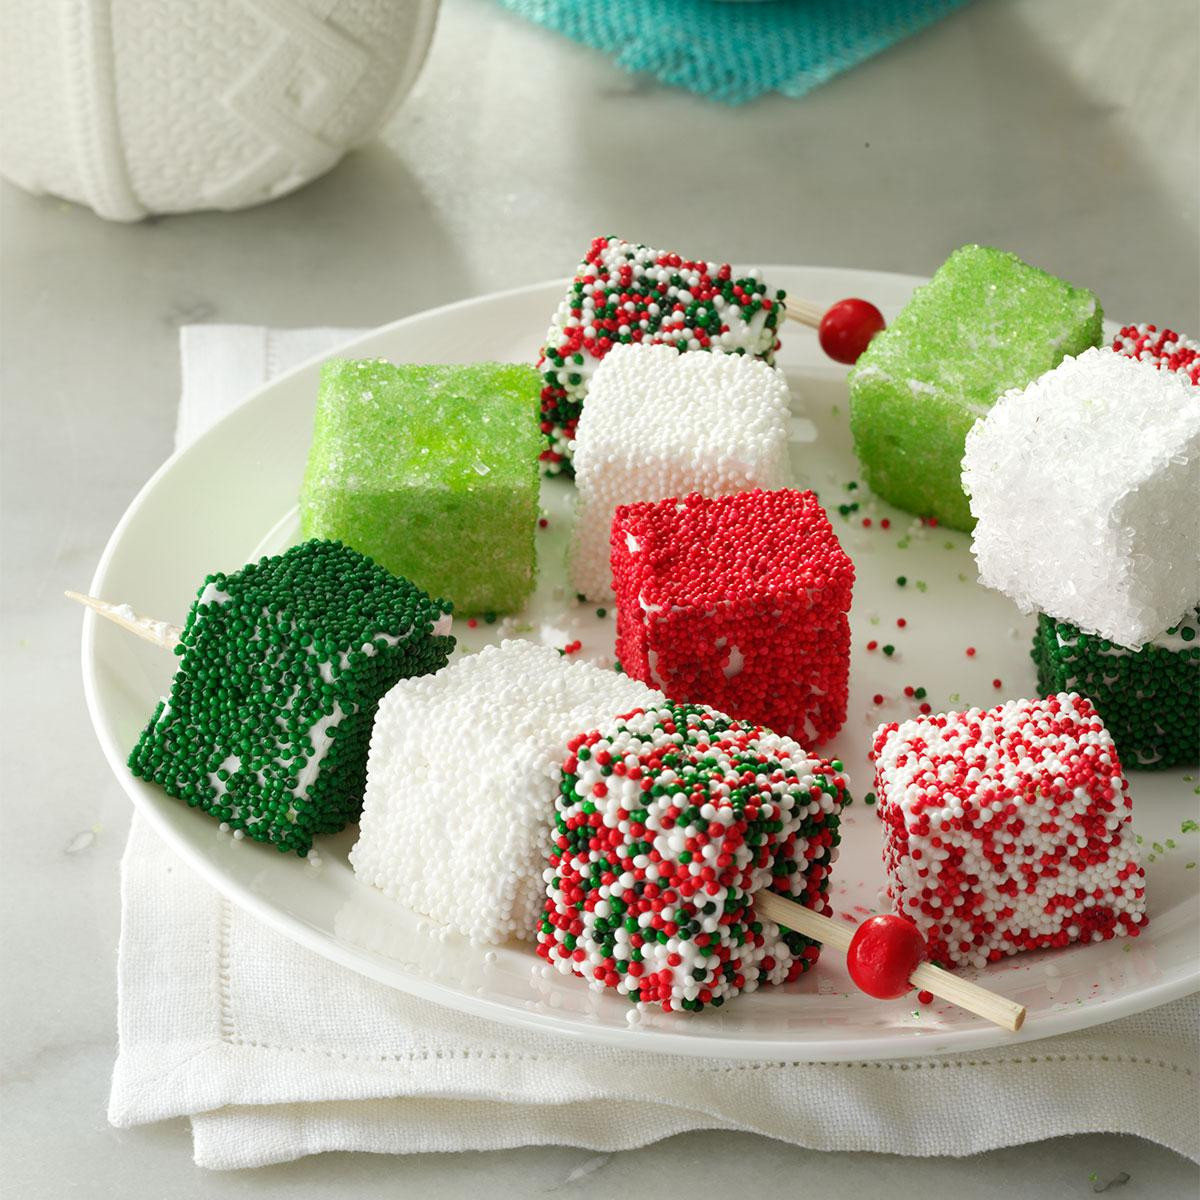 Easy Christmas Candy Recipes
 Homemade Holiday Marshmallows Recipe